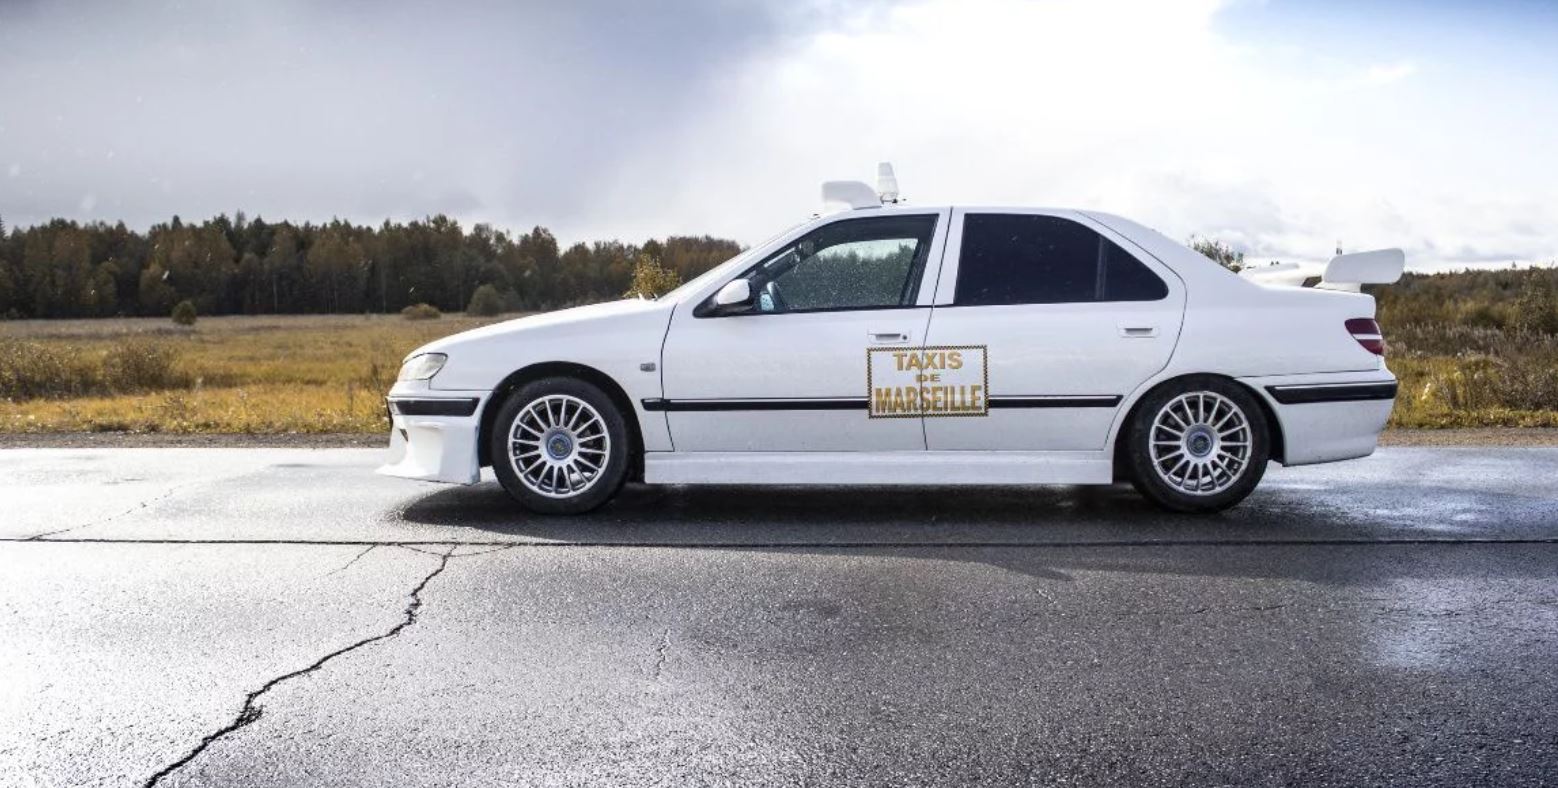 Esta réplica del Peugeot 406 de la película taxi está a la venta por 3.200 euros